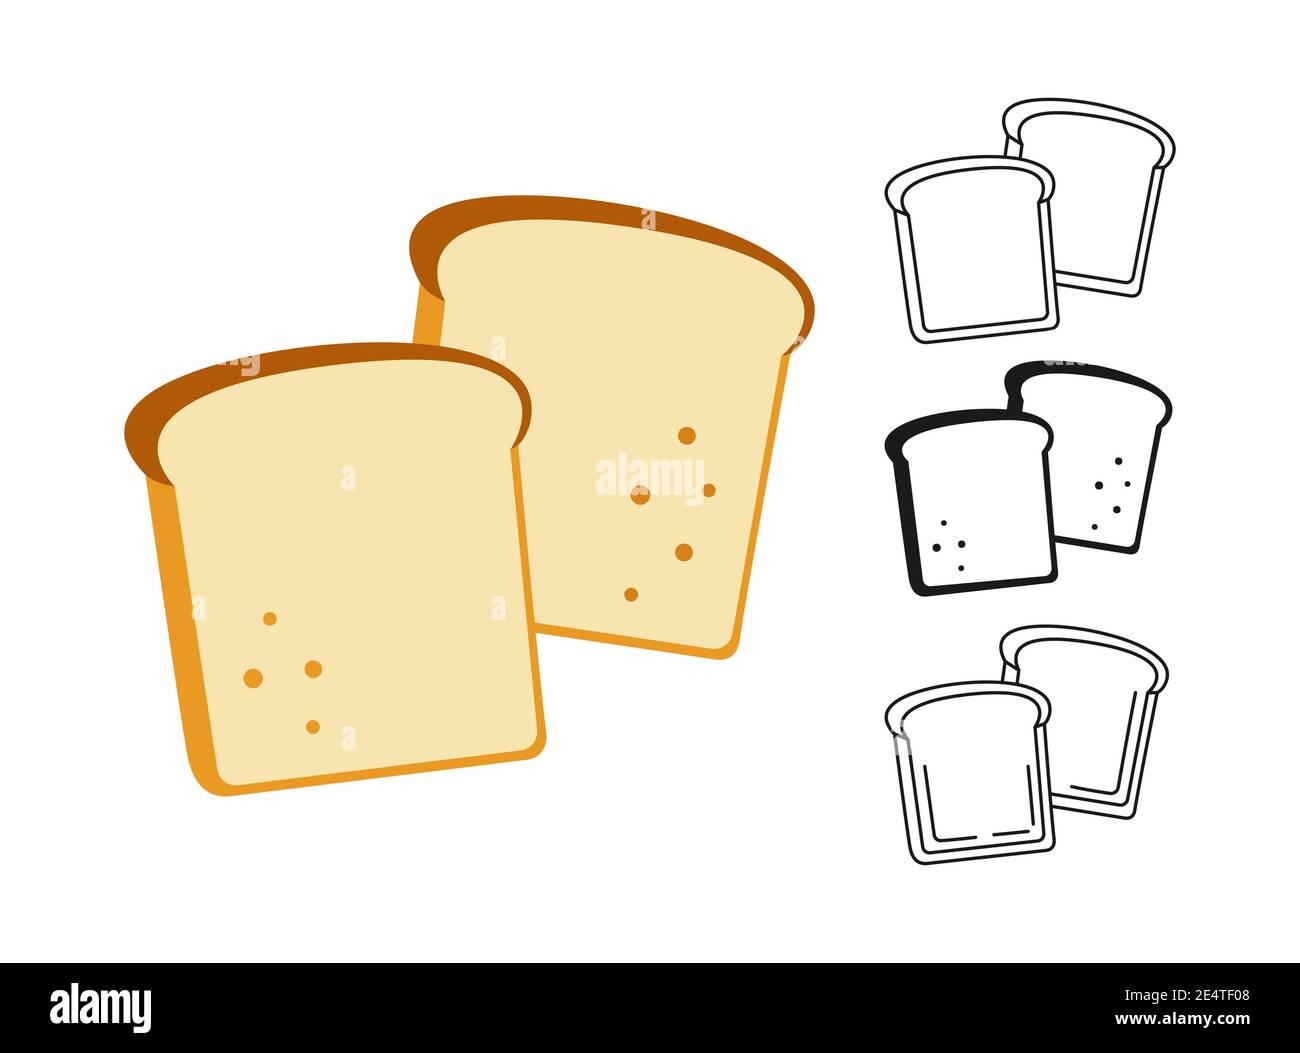 bread slice logo